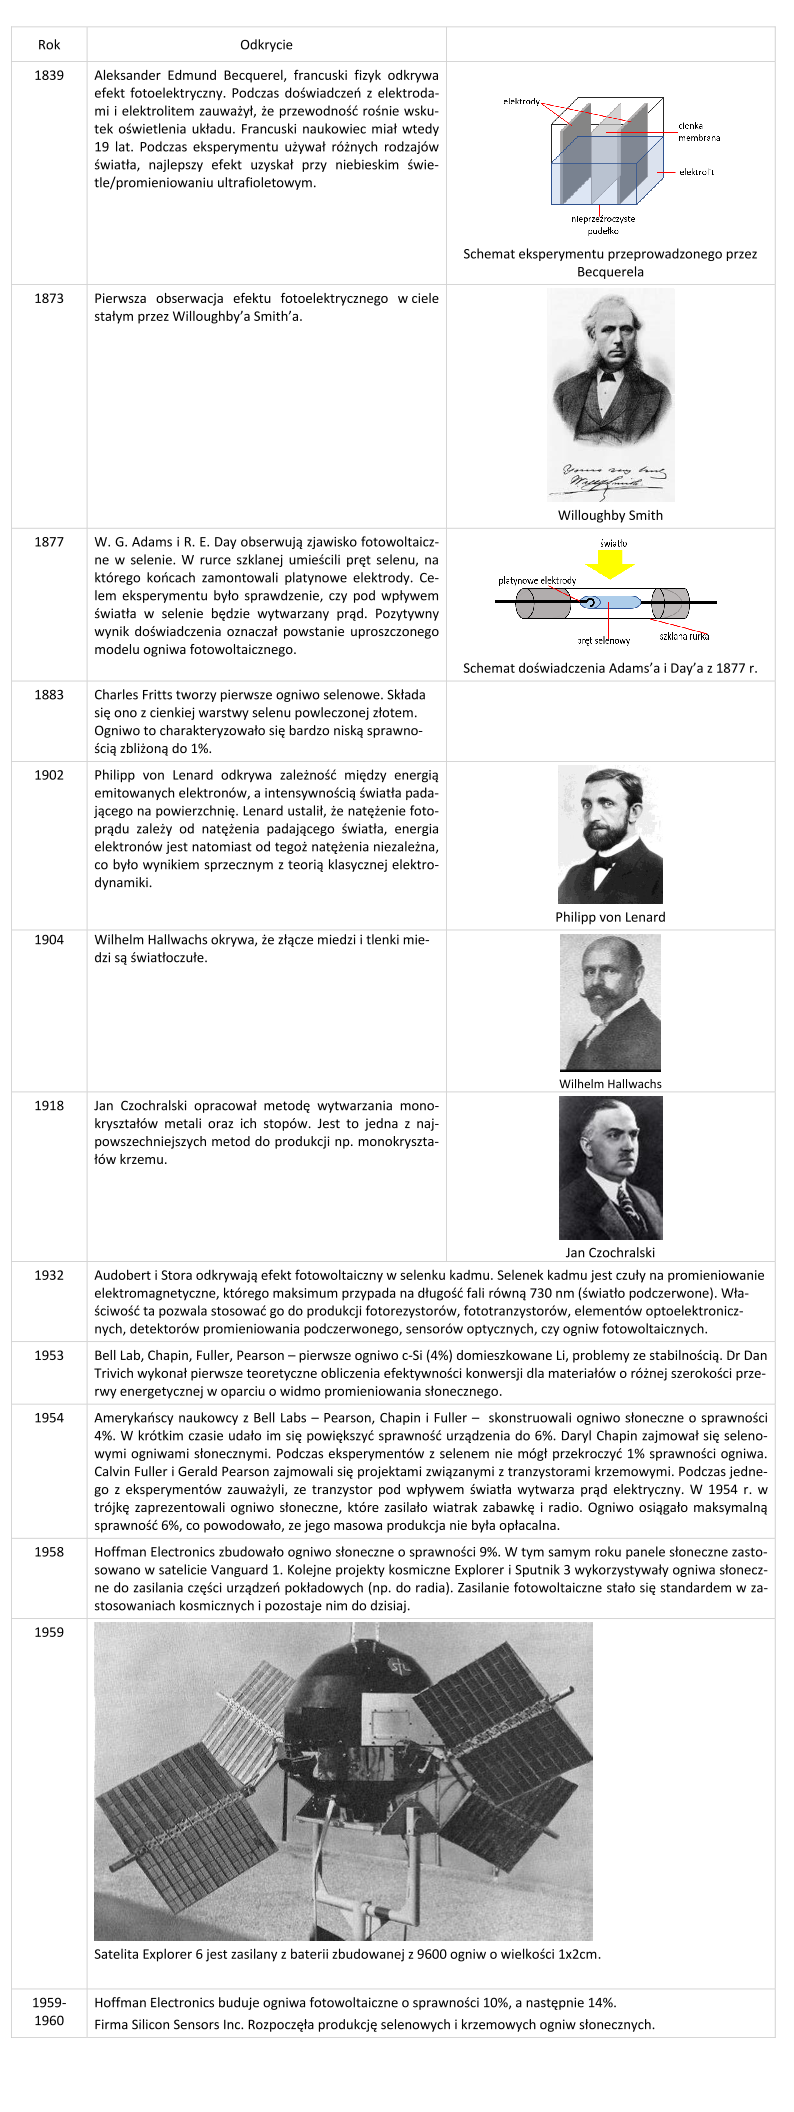 Historia dokonań w zakresie badań efektu fotowoltaicznego (od 1839 r. do 1960 r.). Oprac. własne.